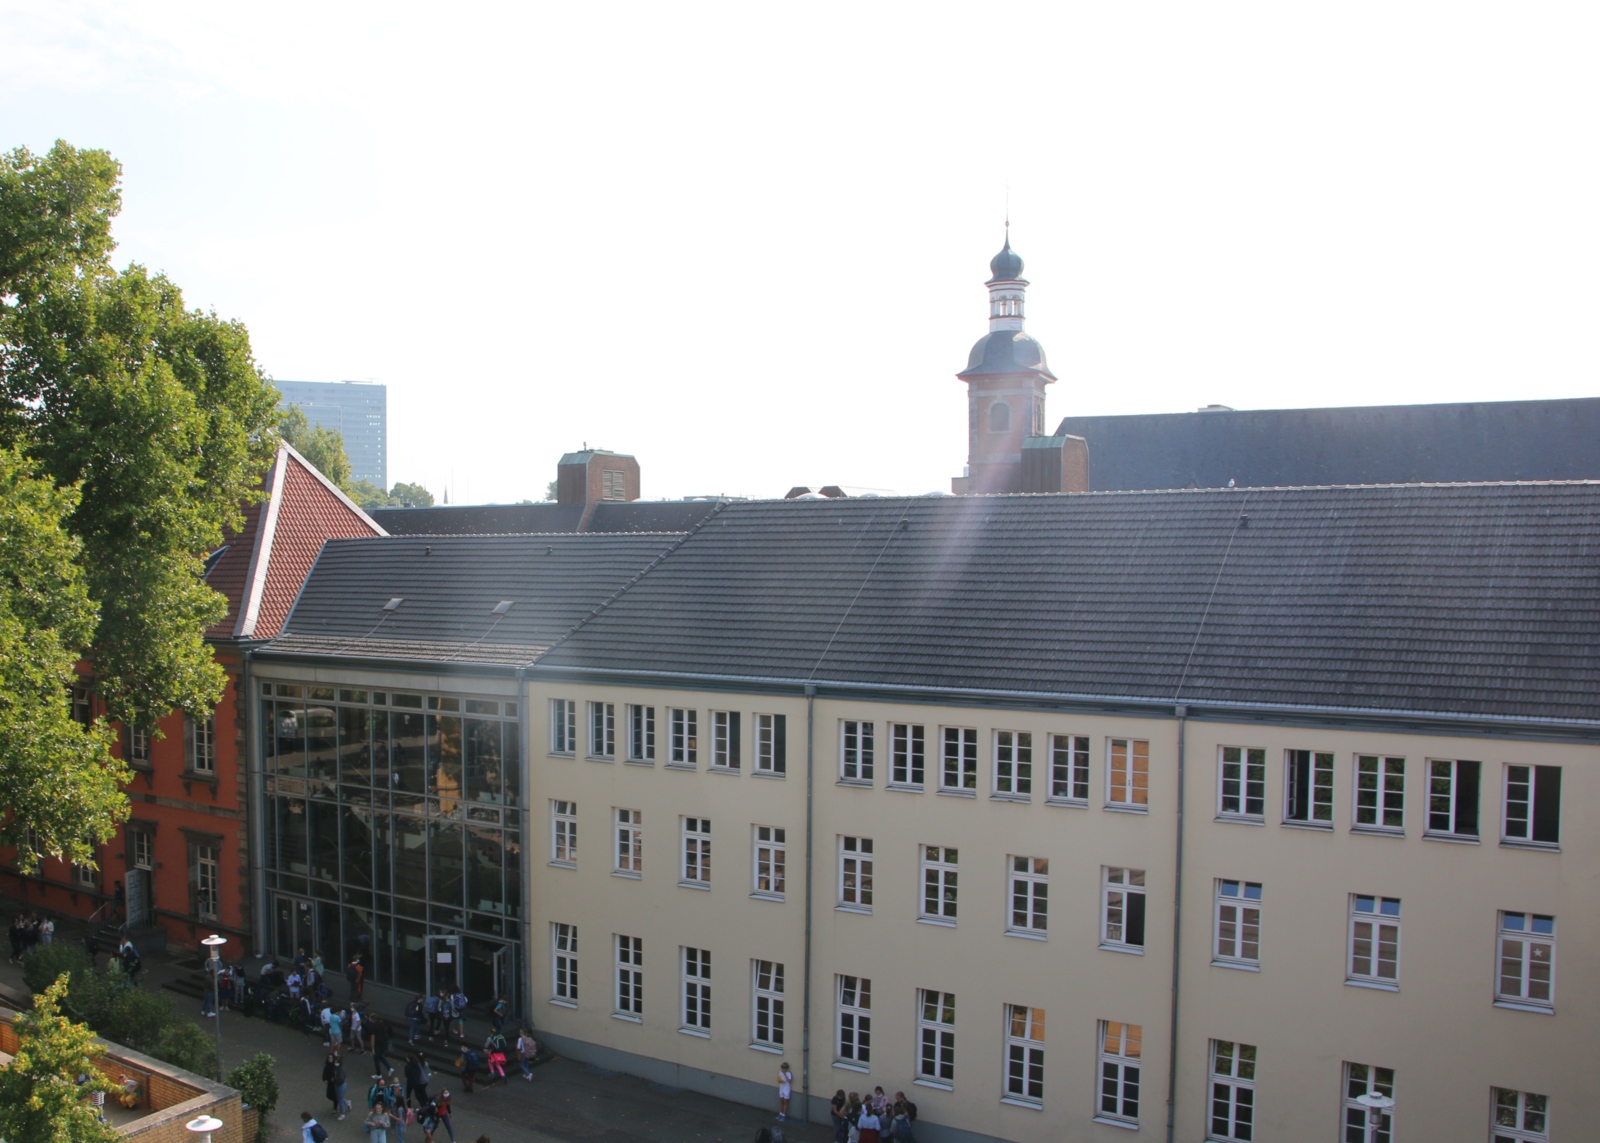 Blick auf den Schulhof des Klosterbaus, im Hintergrund unsere Schulkirche, die Kreuzherrenkirche